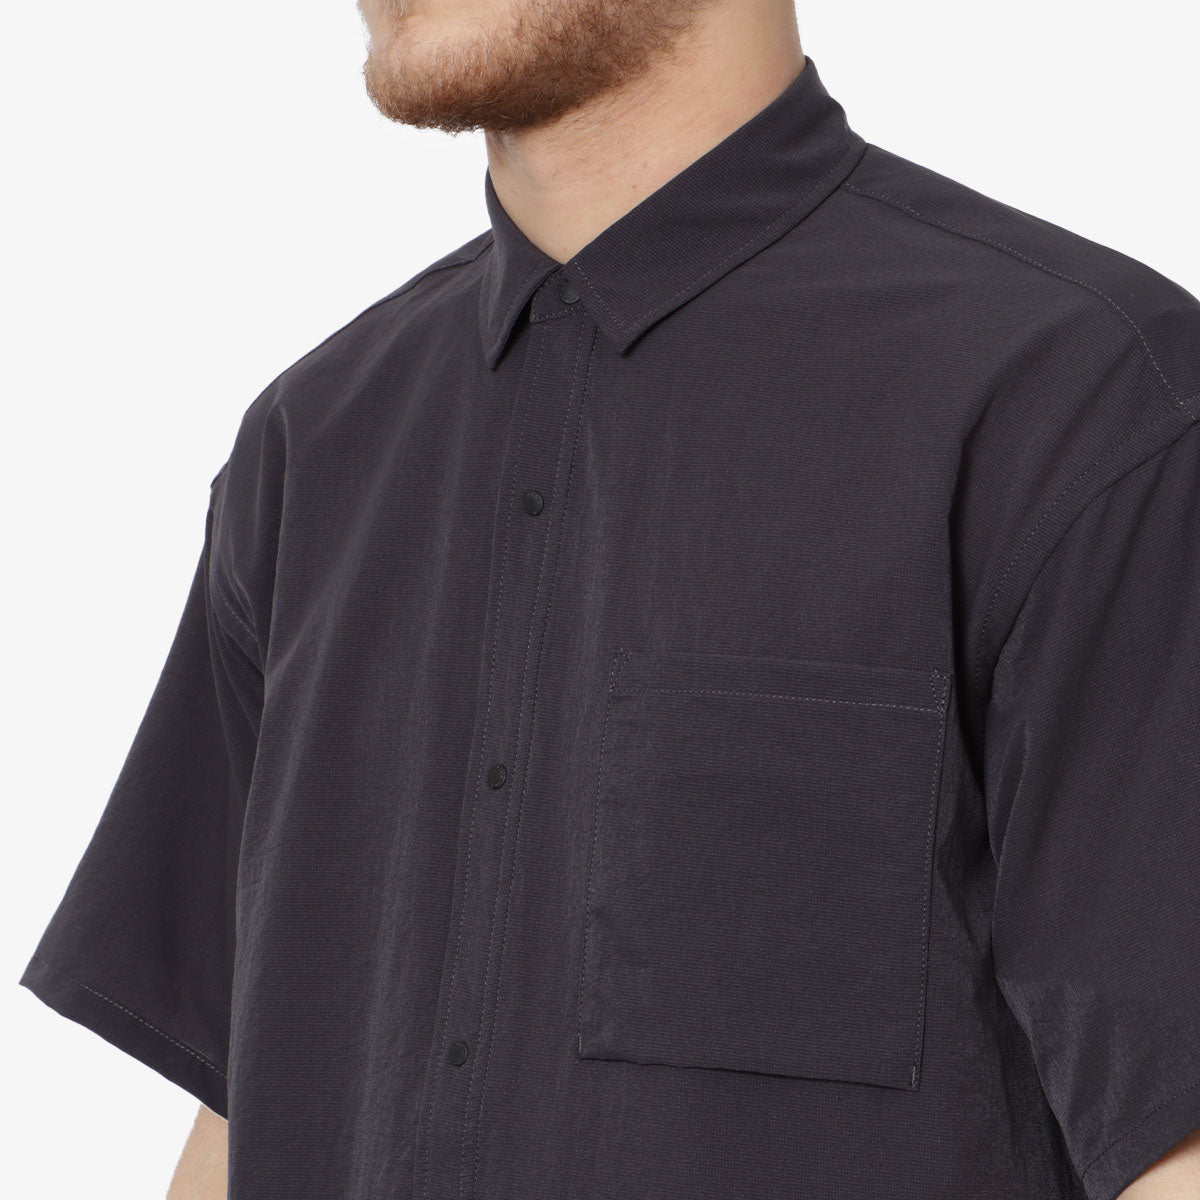 Nanga Dot Air Comfy Short Sleeve Shirt, Black, Detail Shot 2